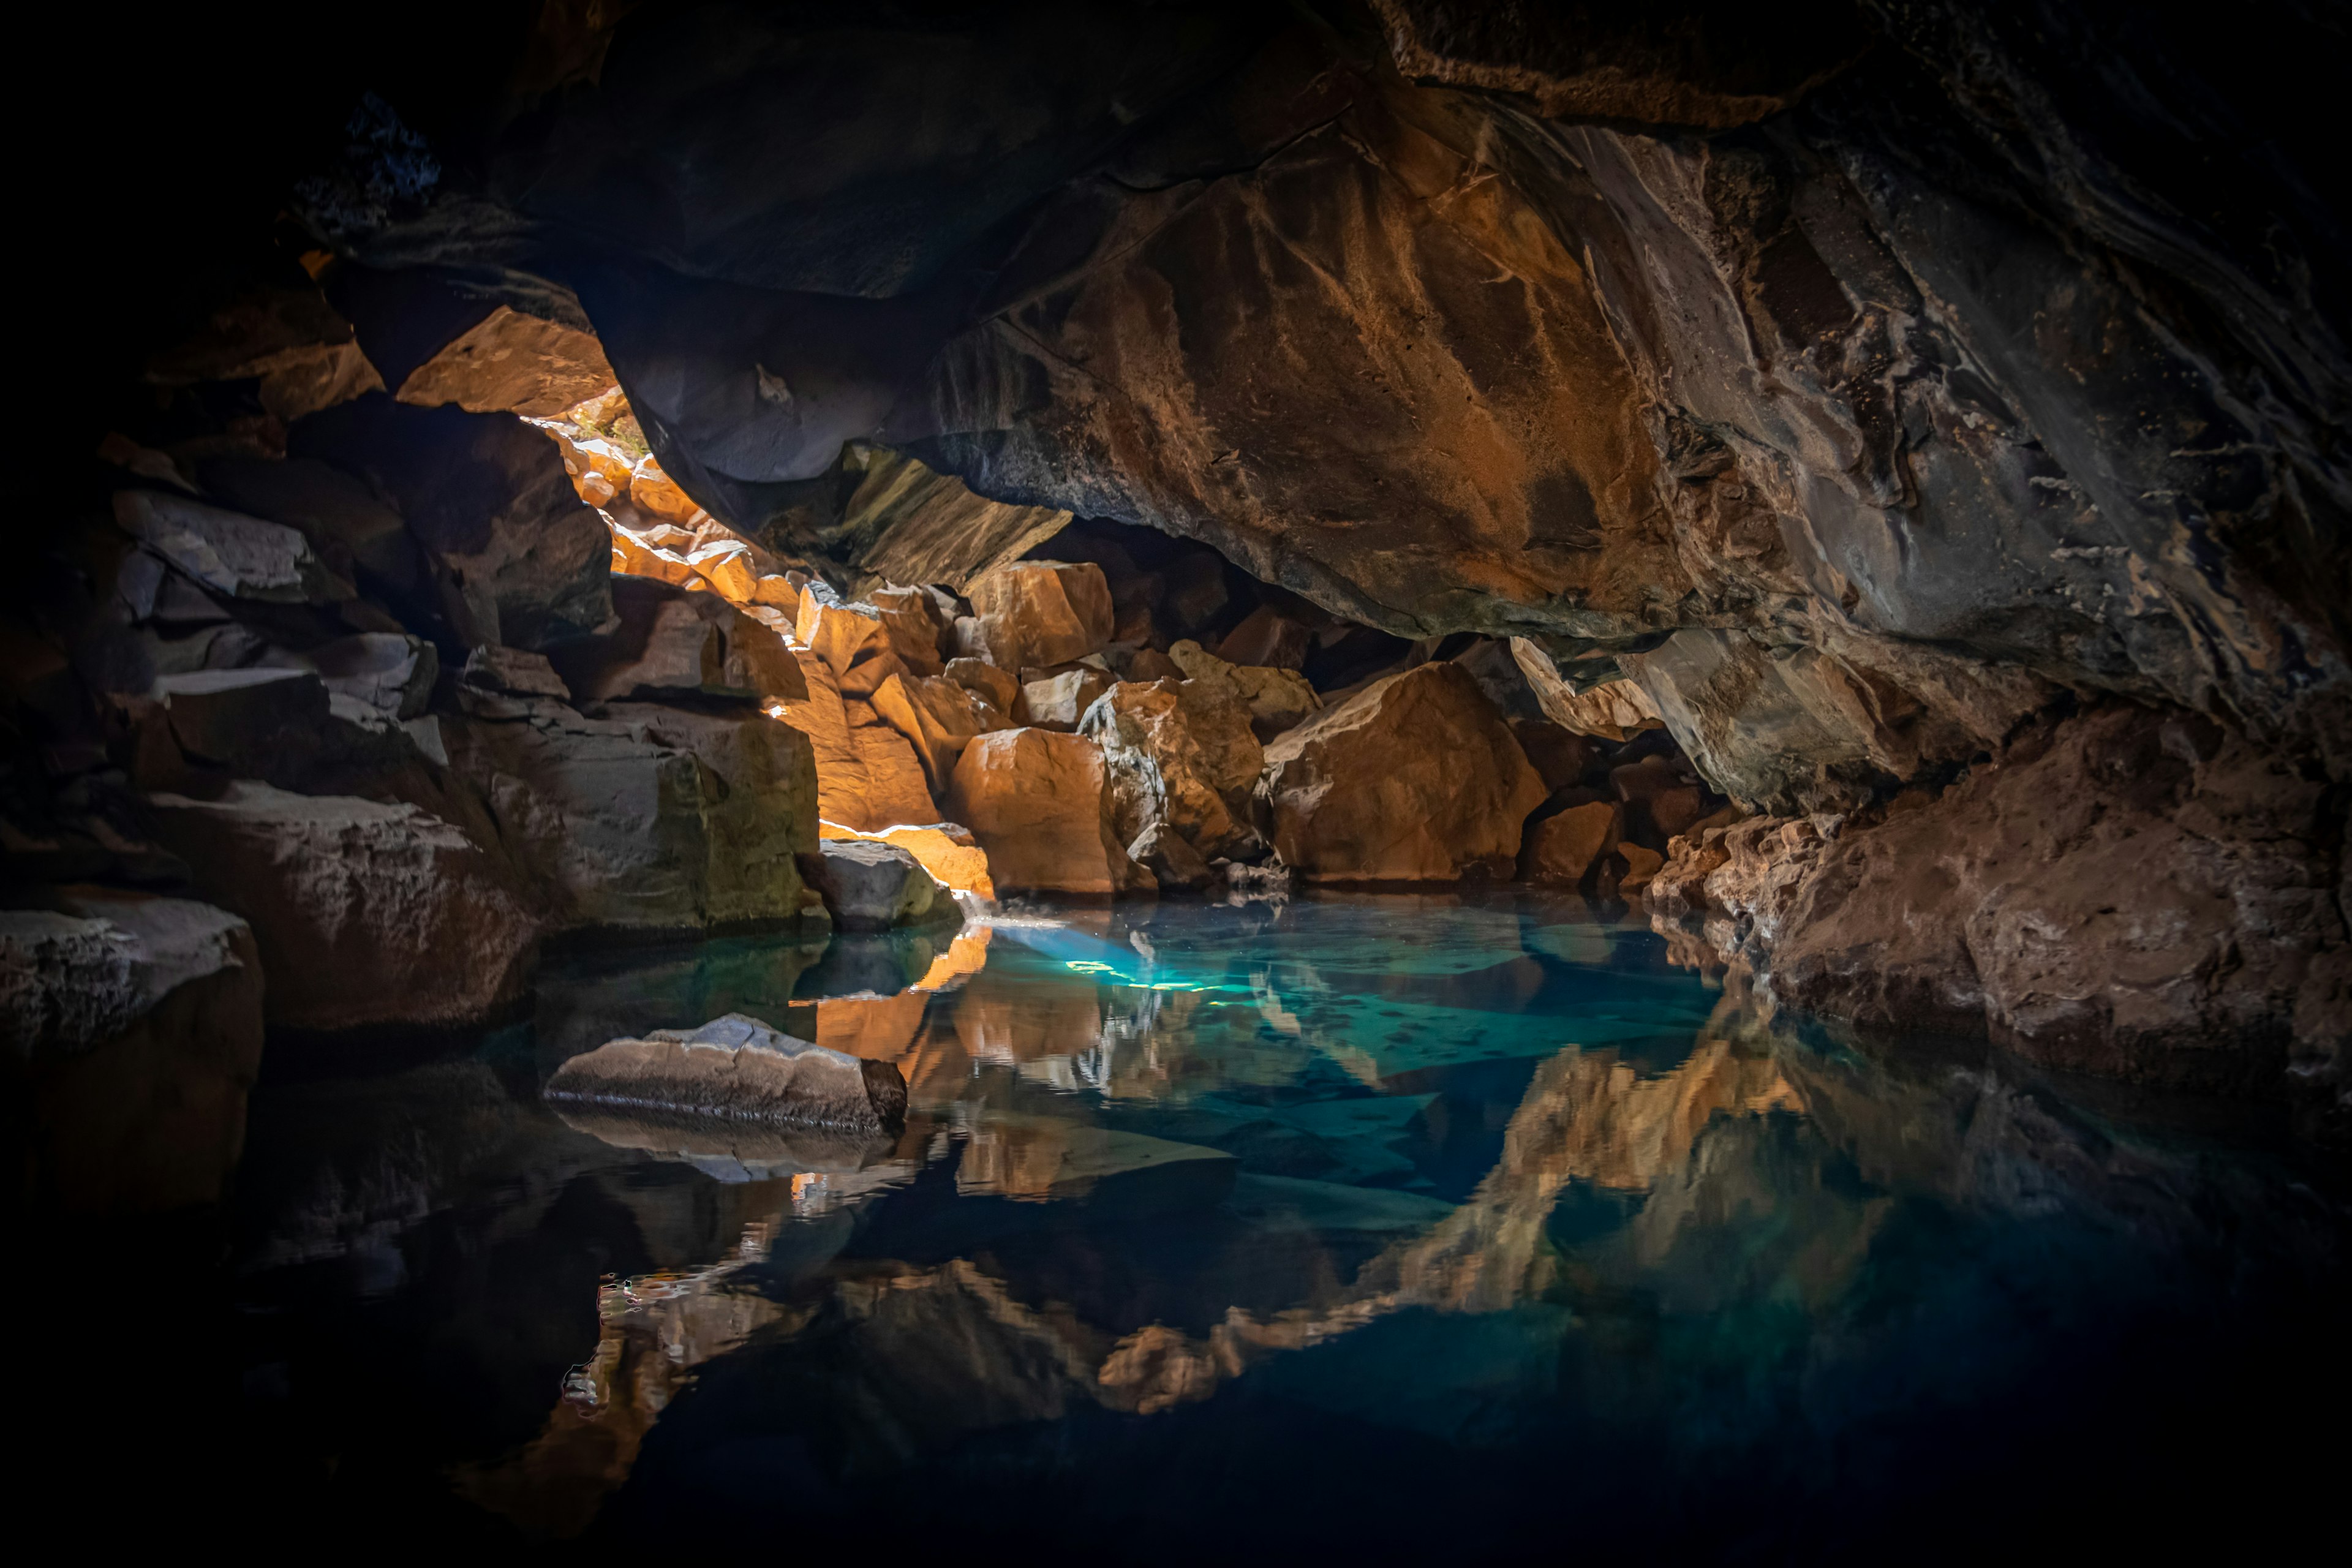 una caverna con all'interno una piscina naturale, simile a quella che si può osservare alla cueva saturno di varadero